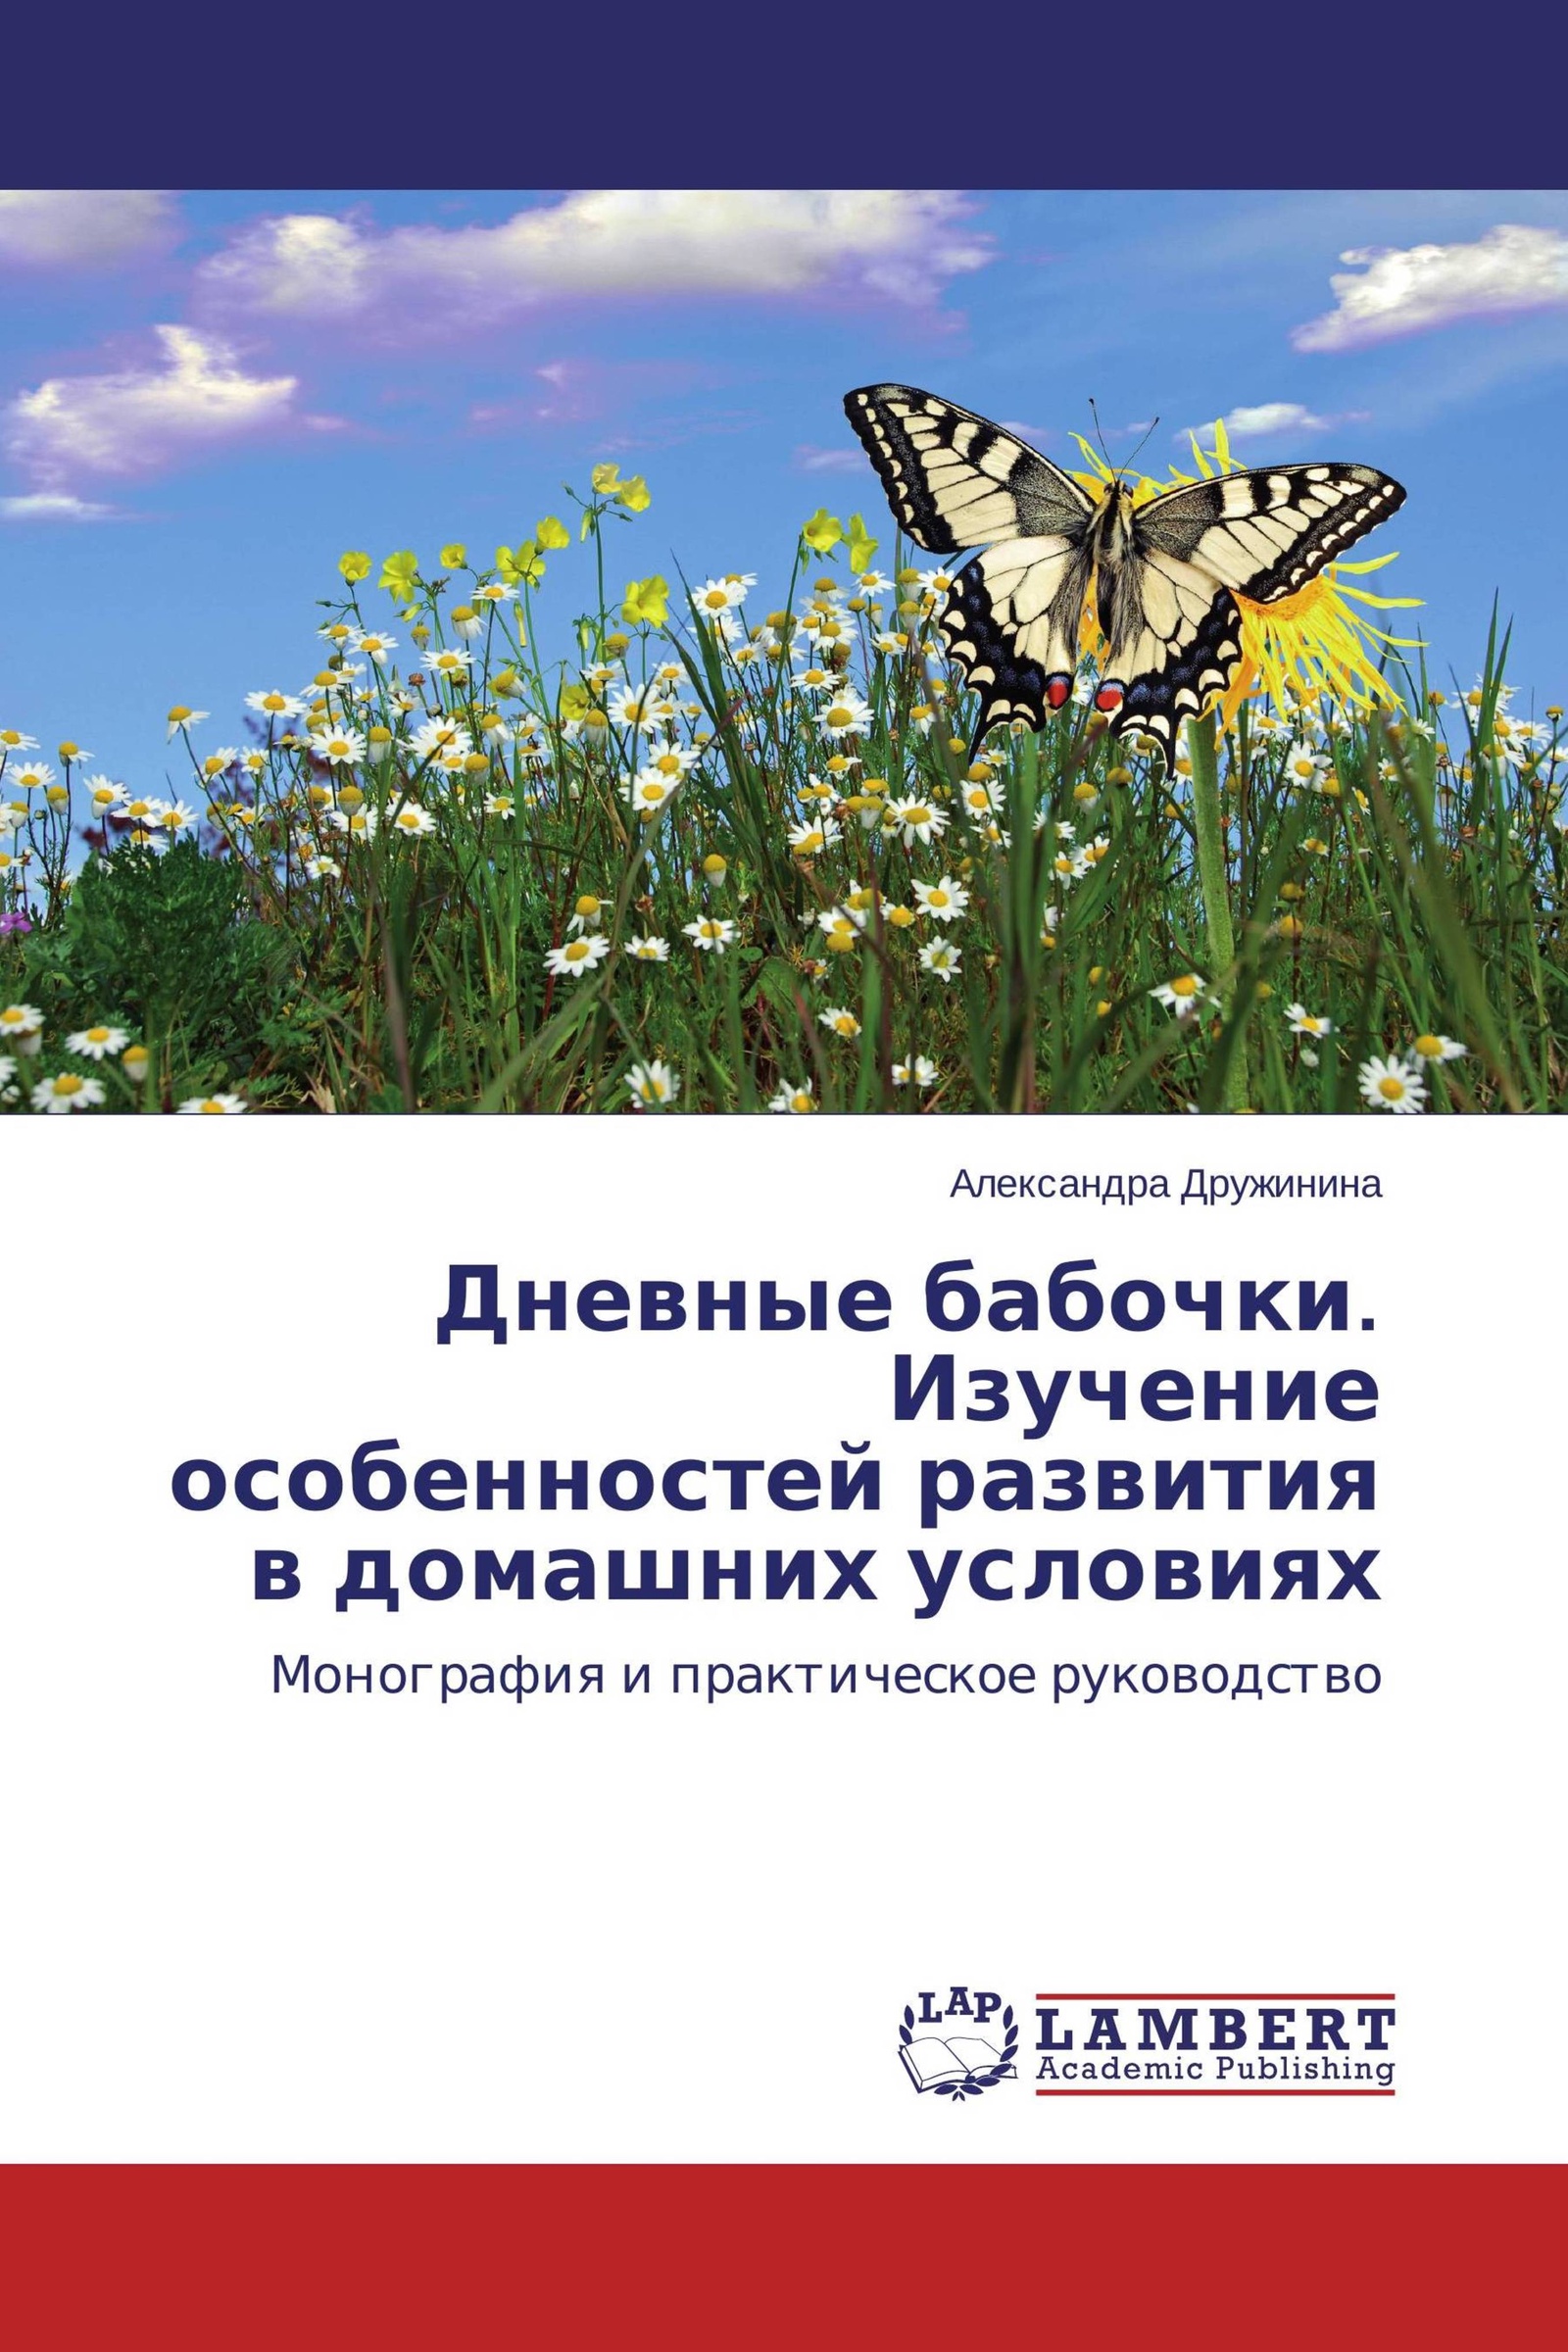 День изучения бабочки. Книга о разведении бабочек. День изучения бабочки 14.